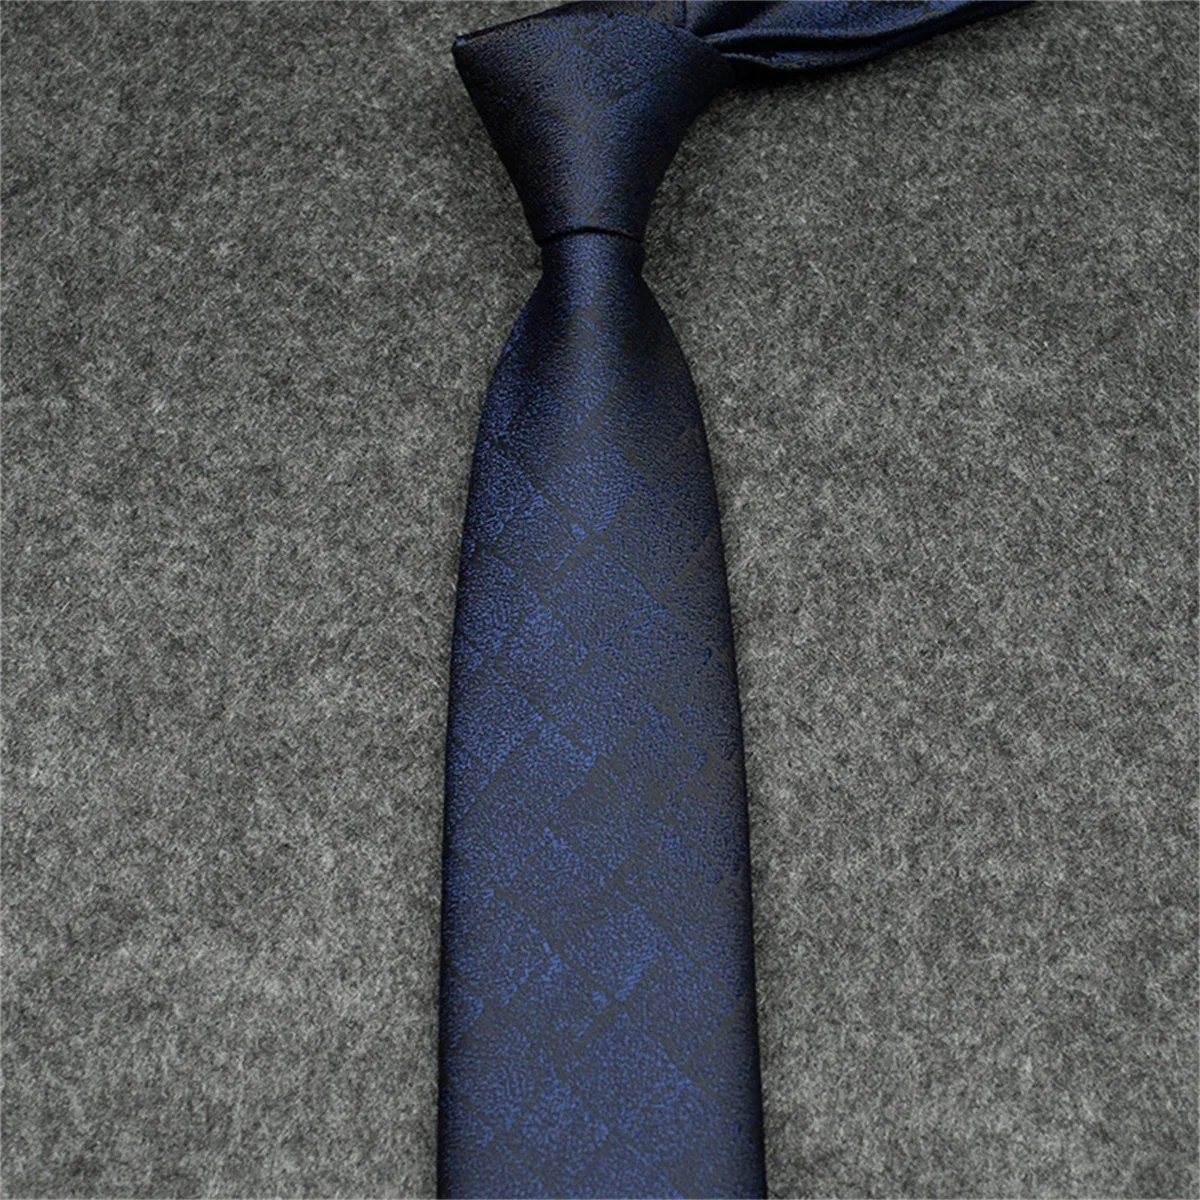 Nuovi craspini per il collo Designer Silk cravatta blu nera jacquard a mano intrecciata per uomini matrimoni casual e business cravatta cravatta per il collo della moda ties 12355 12355